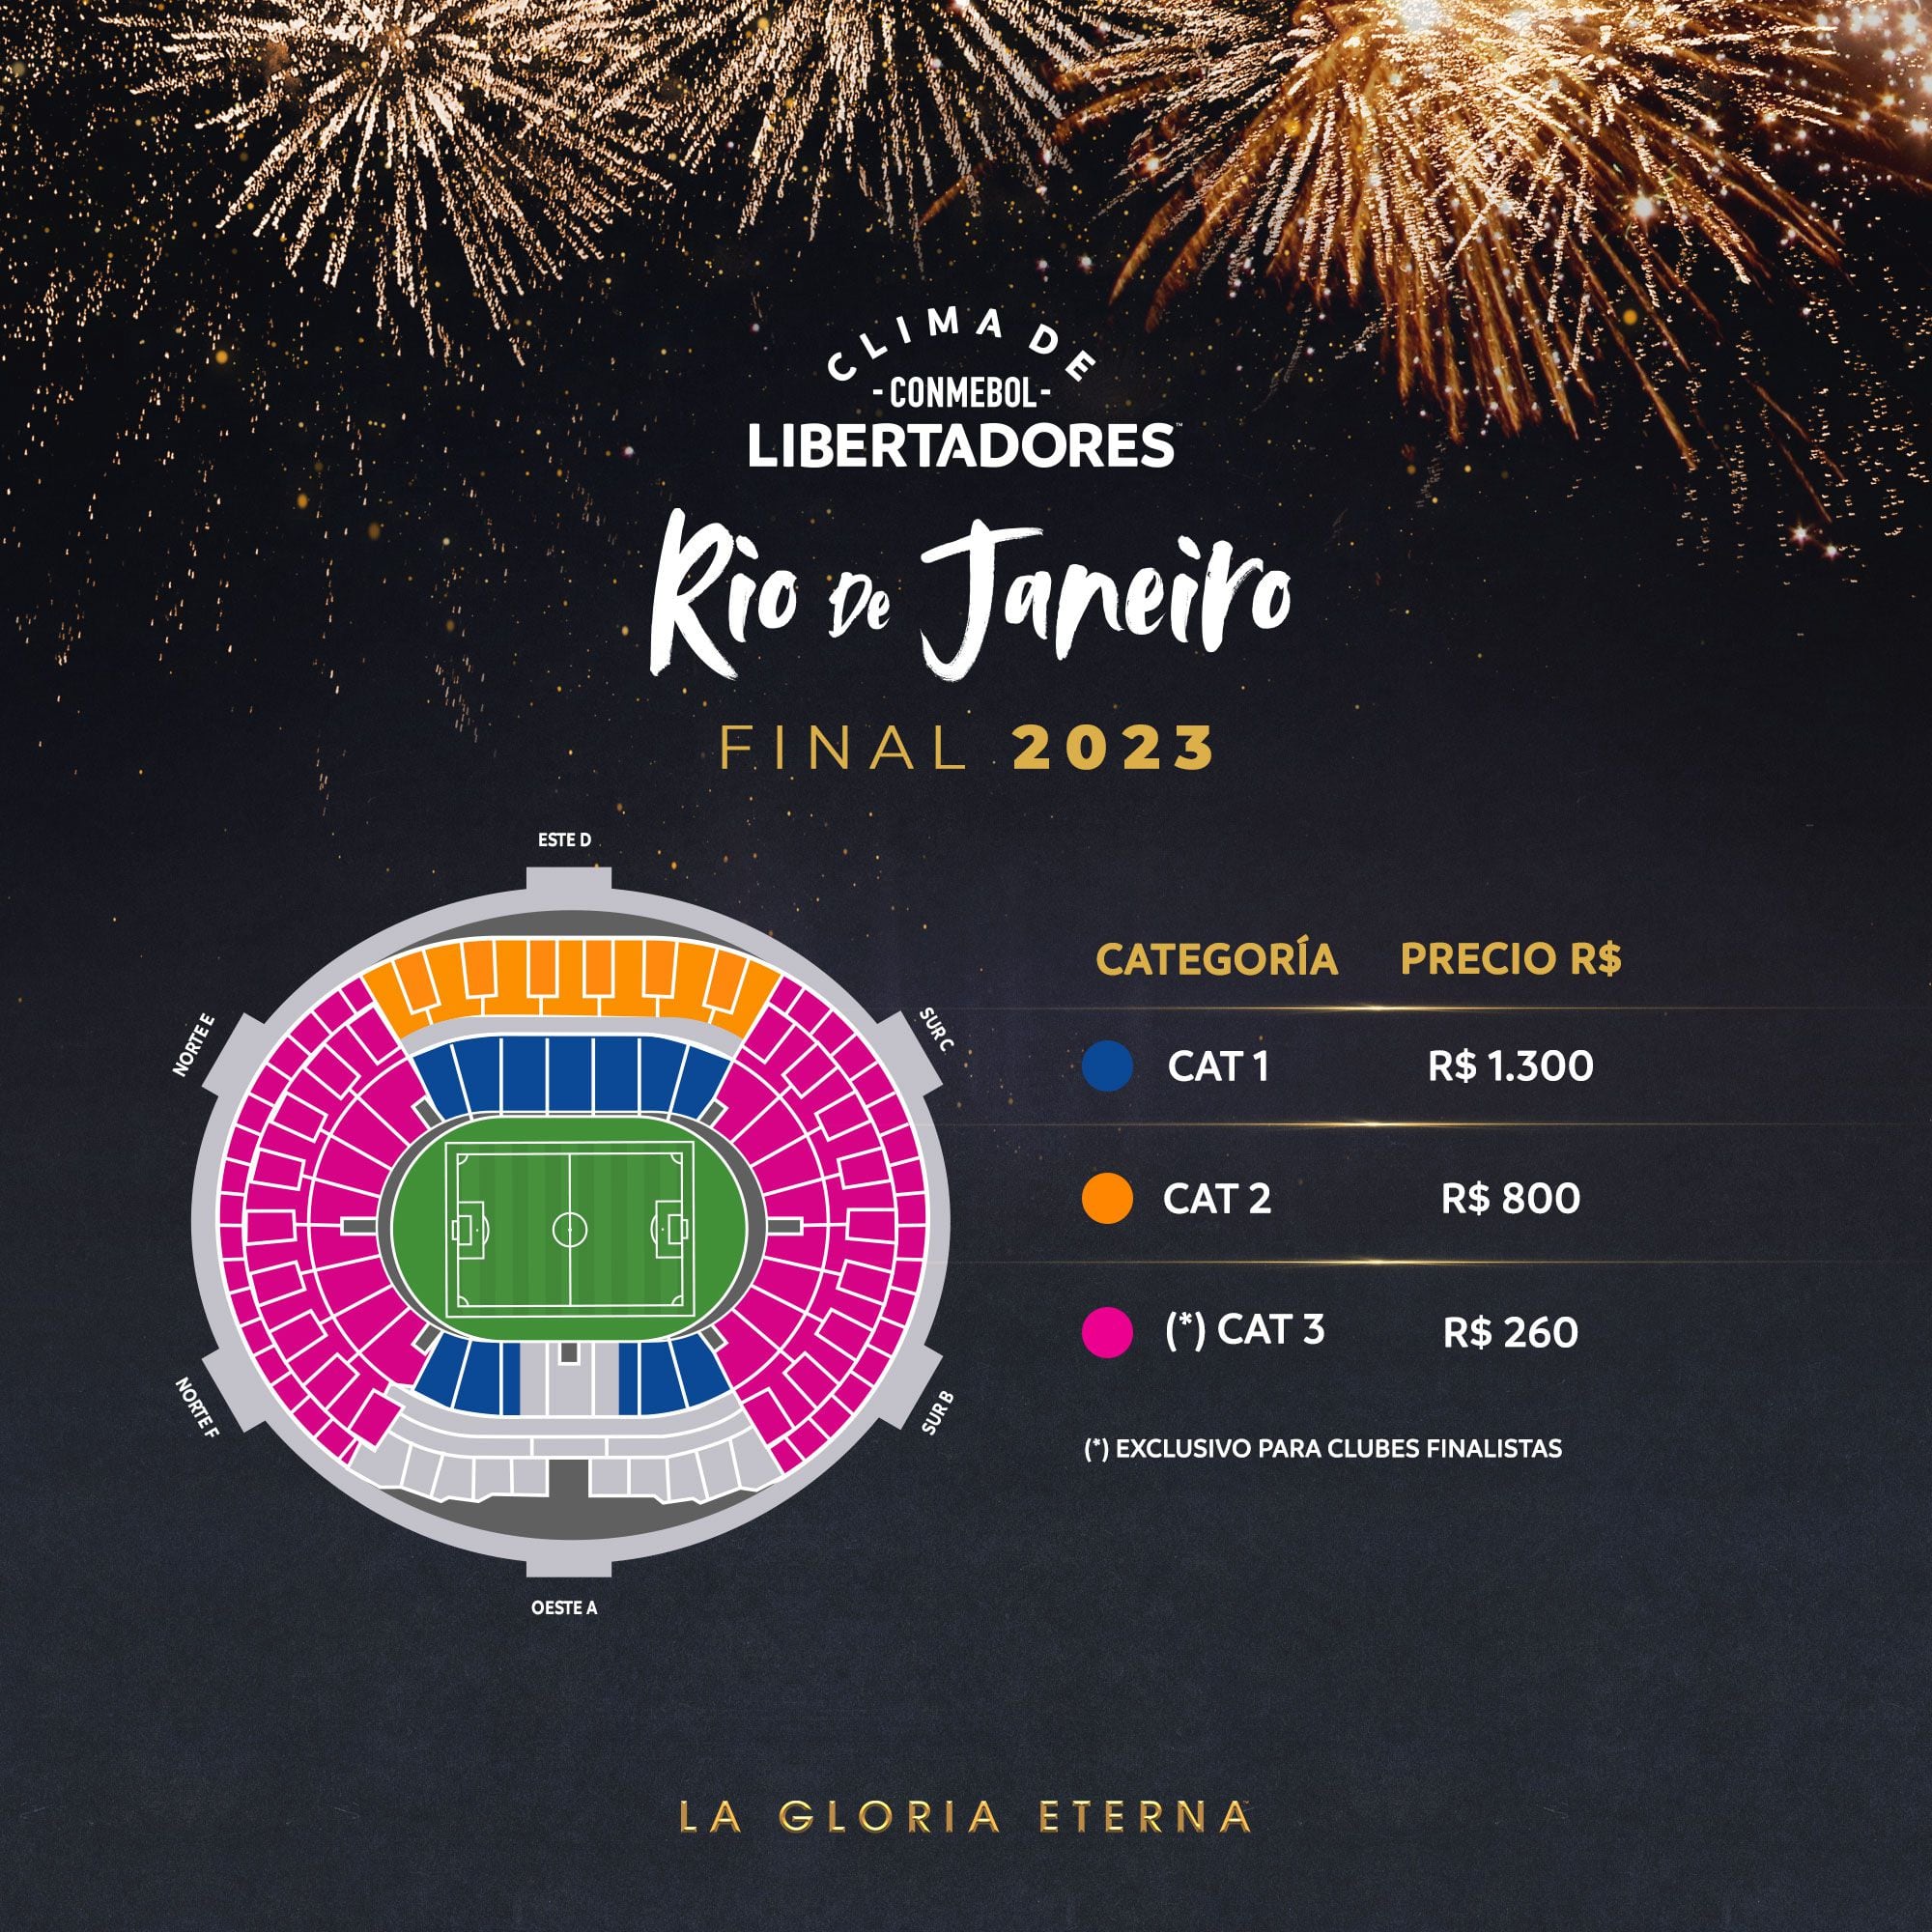 Los precios de los tickets de la final de la Copa Libertadores